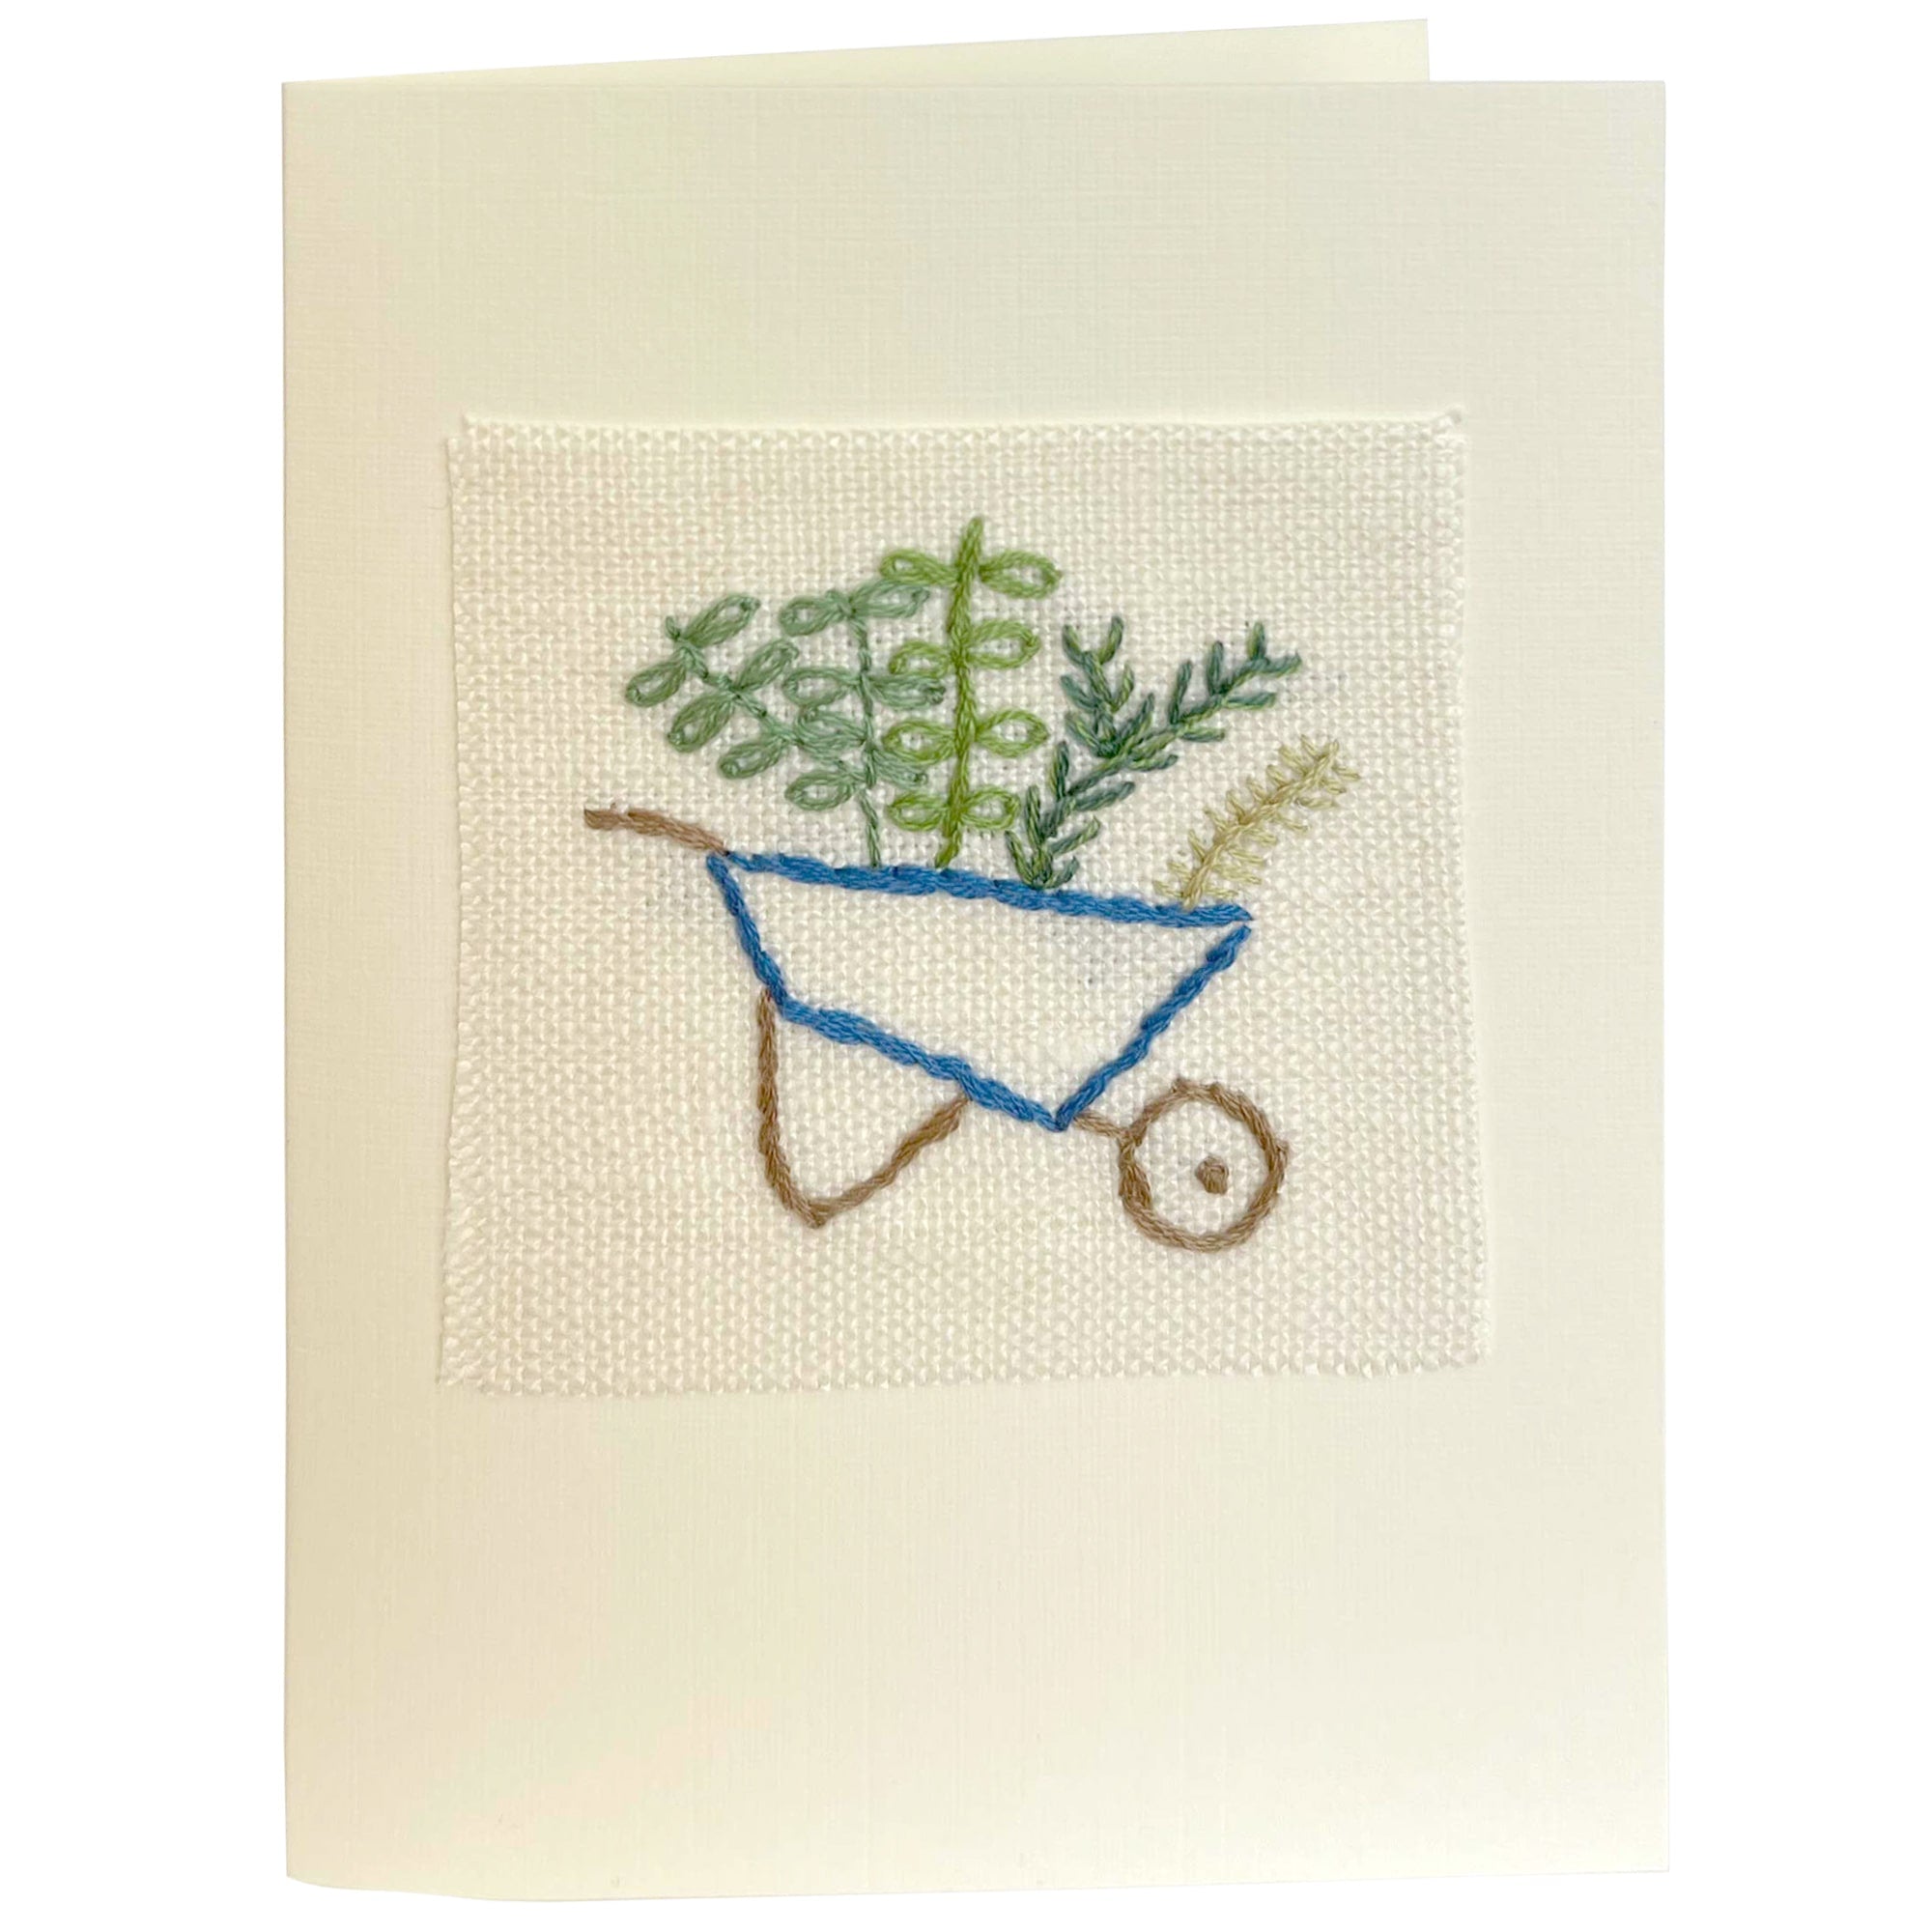 Fine-Cell-Work-Wheelbarrow-Hand-Embroidered-Card.jpg